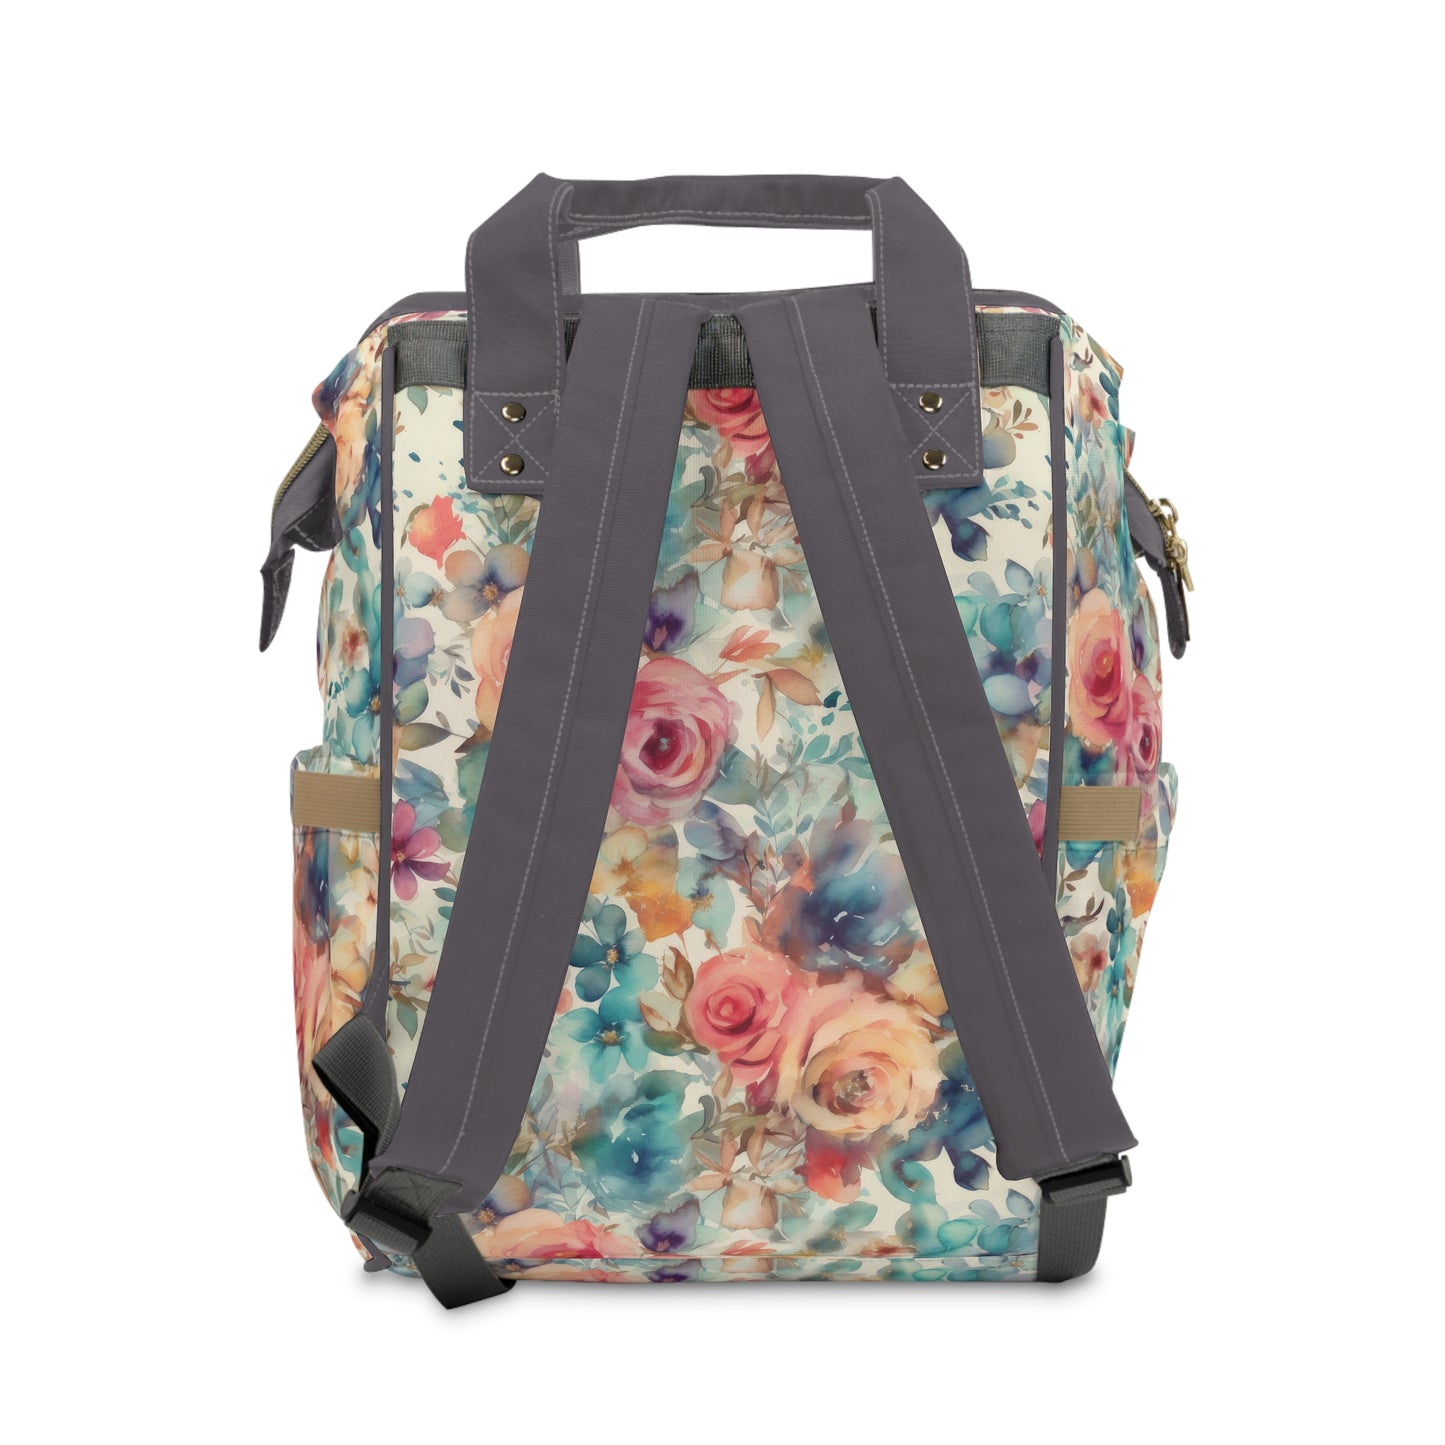 Seaside Blooms Multifunctional Diaper Backpack